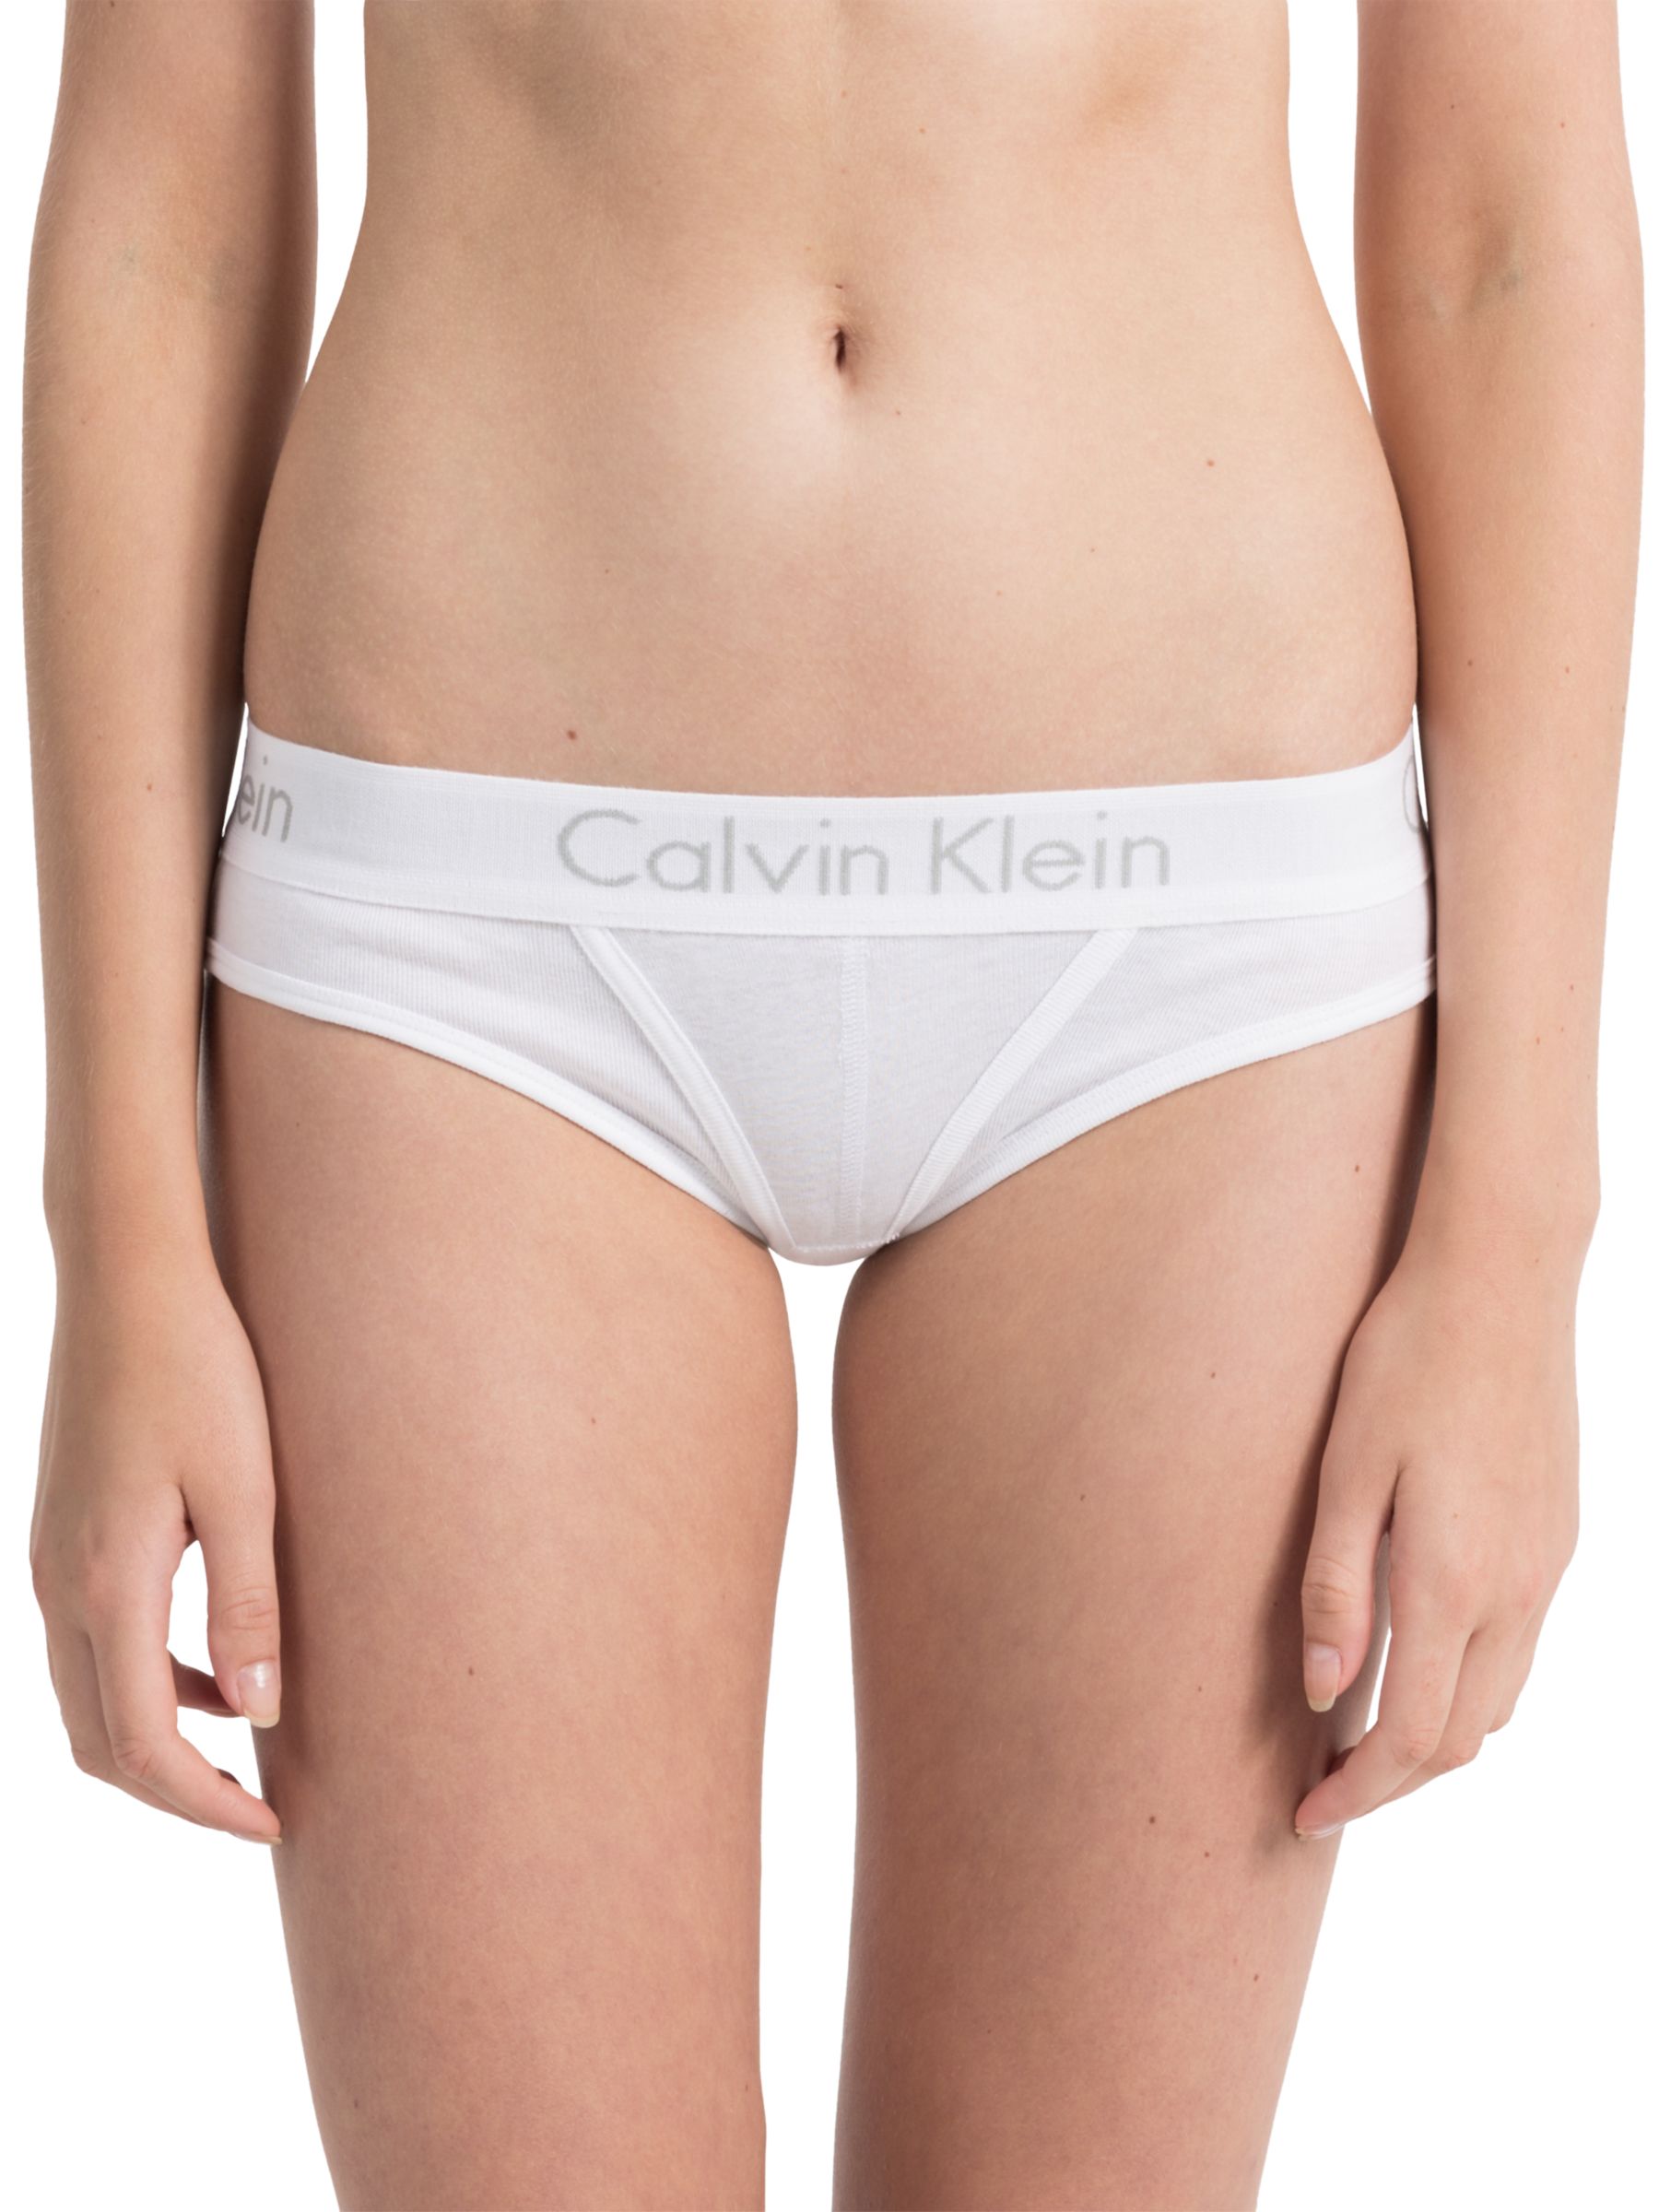 calvin klein body underwear